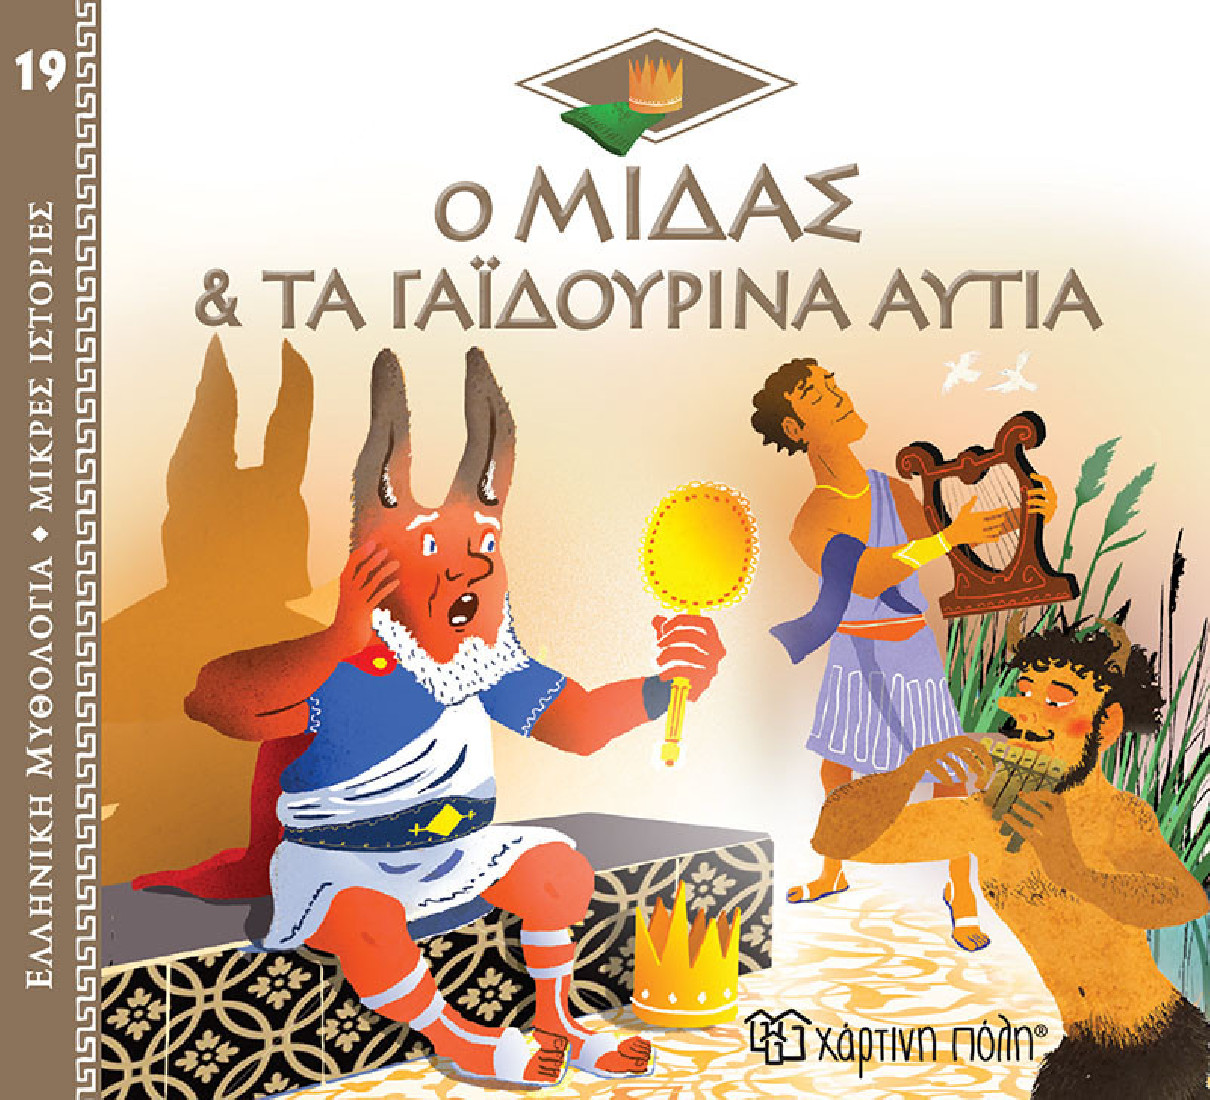 Ελληνική Μυθολογία- Μικρές ιστορίες: Ο Μίδας & τα γαϊδουρινά αυτιά